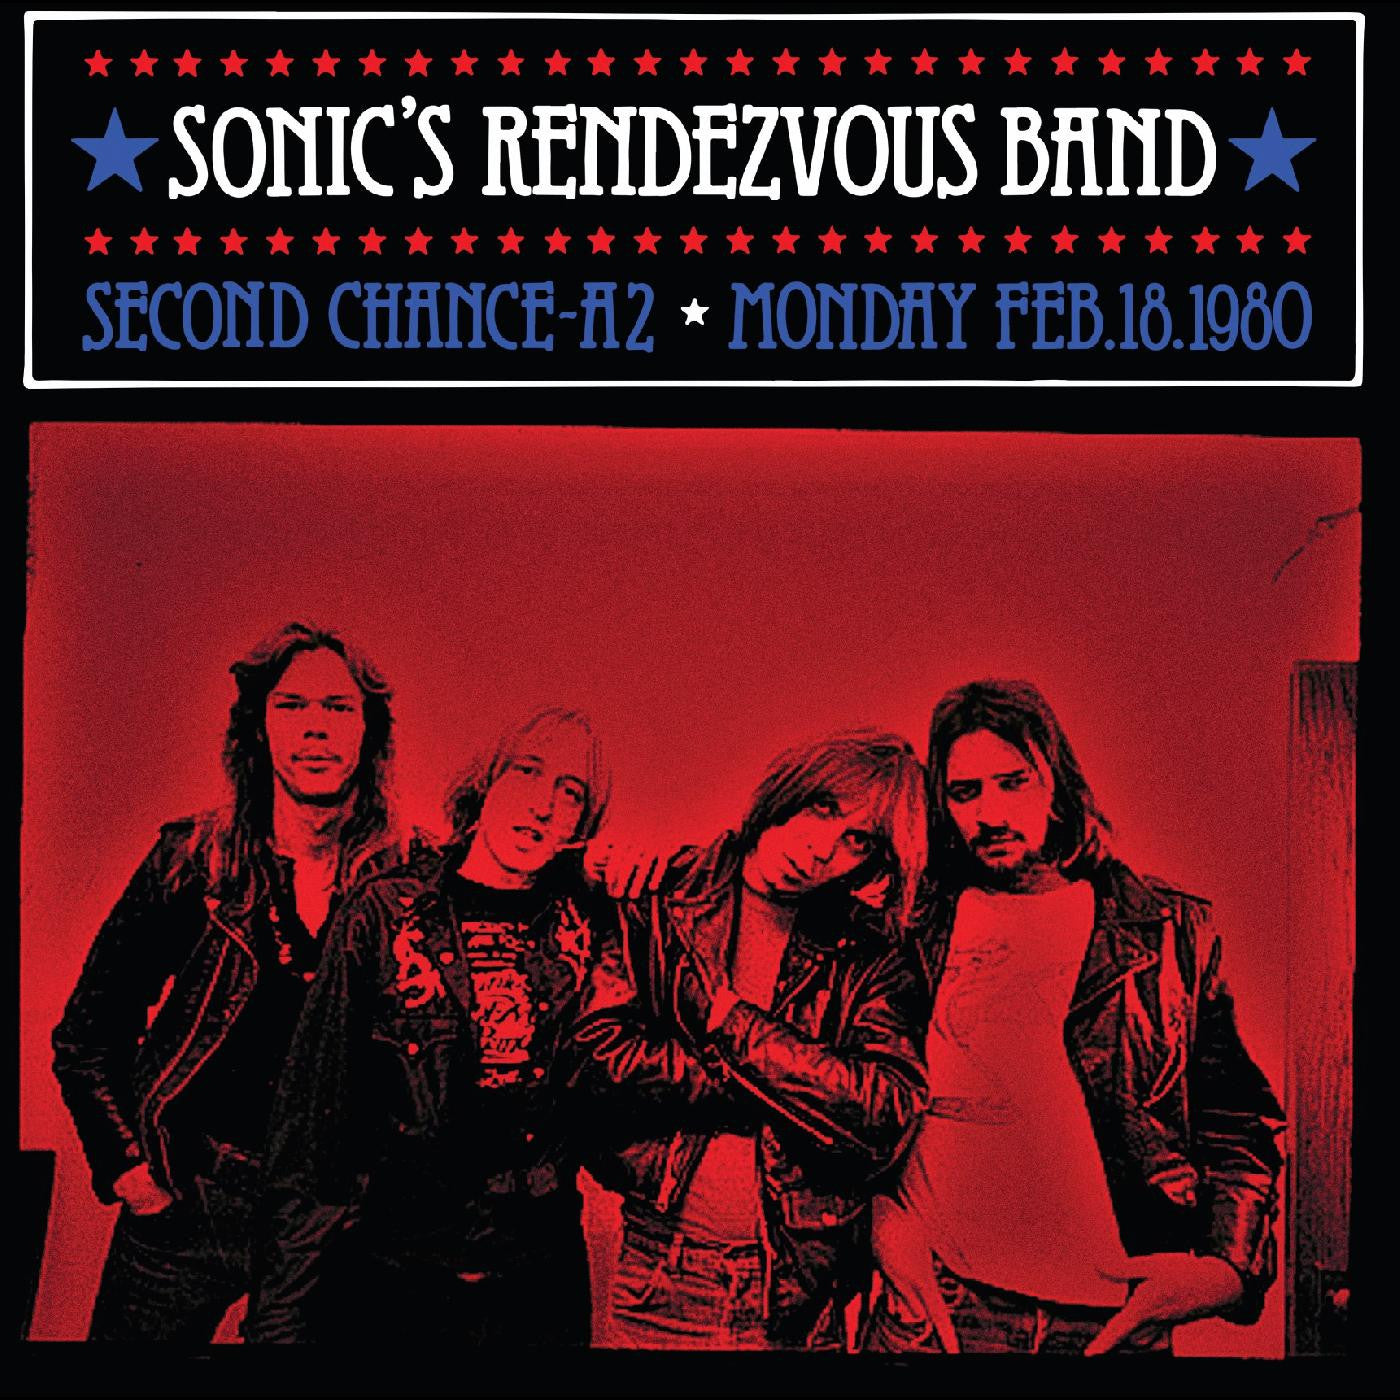 SONIC'S RENDEZVOUS BAND - SECOND CHANCE A2 Vinyl 2xLP